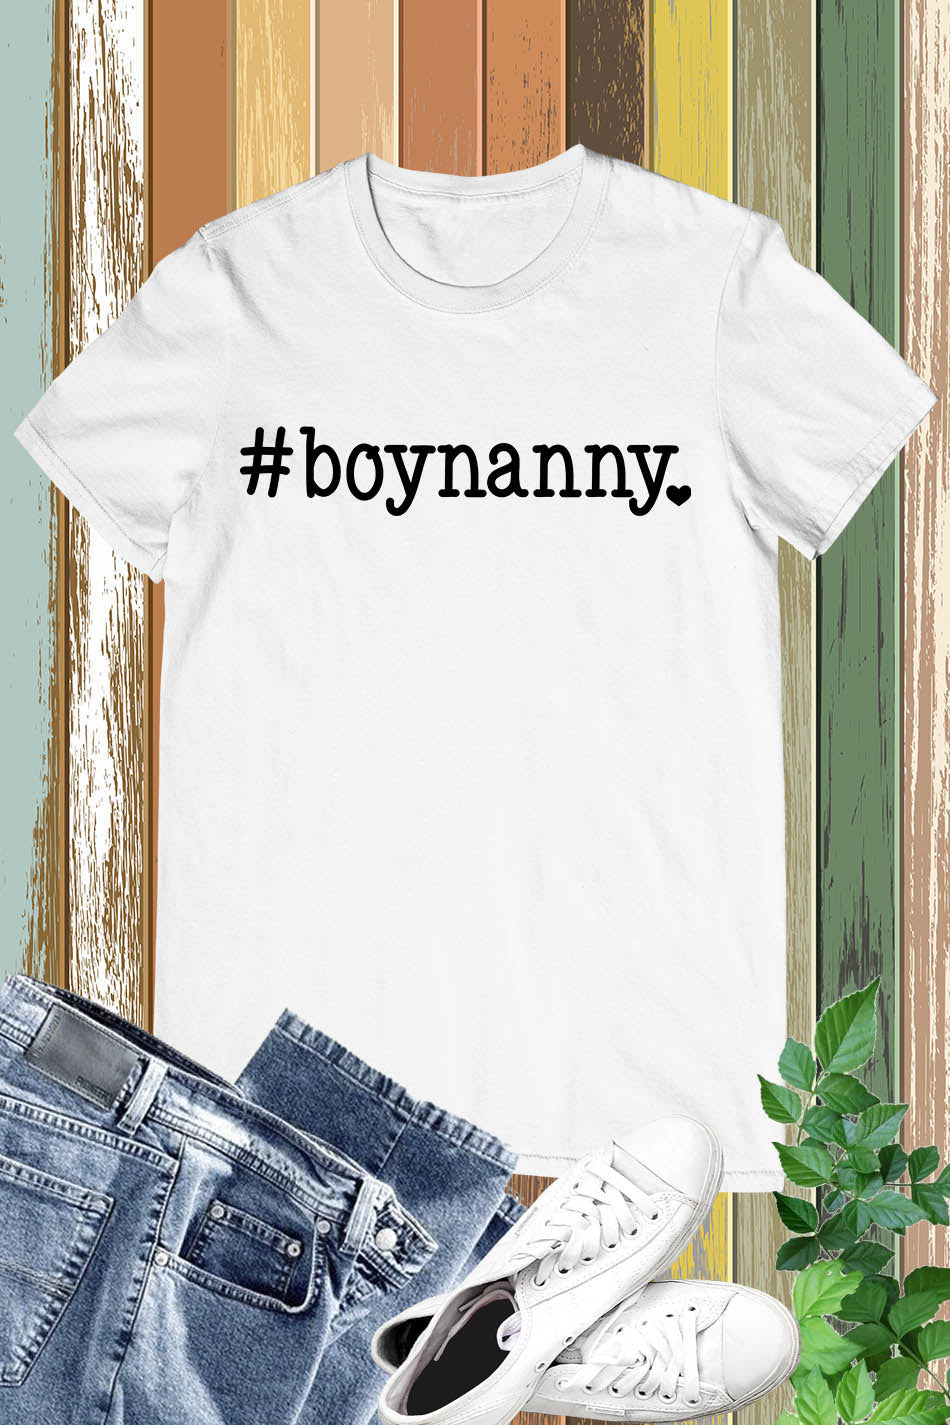 Boynanny Nanny of Boy Shirt